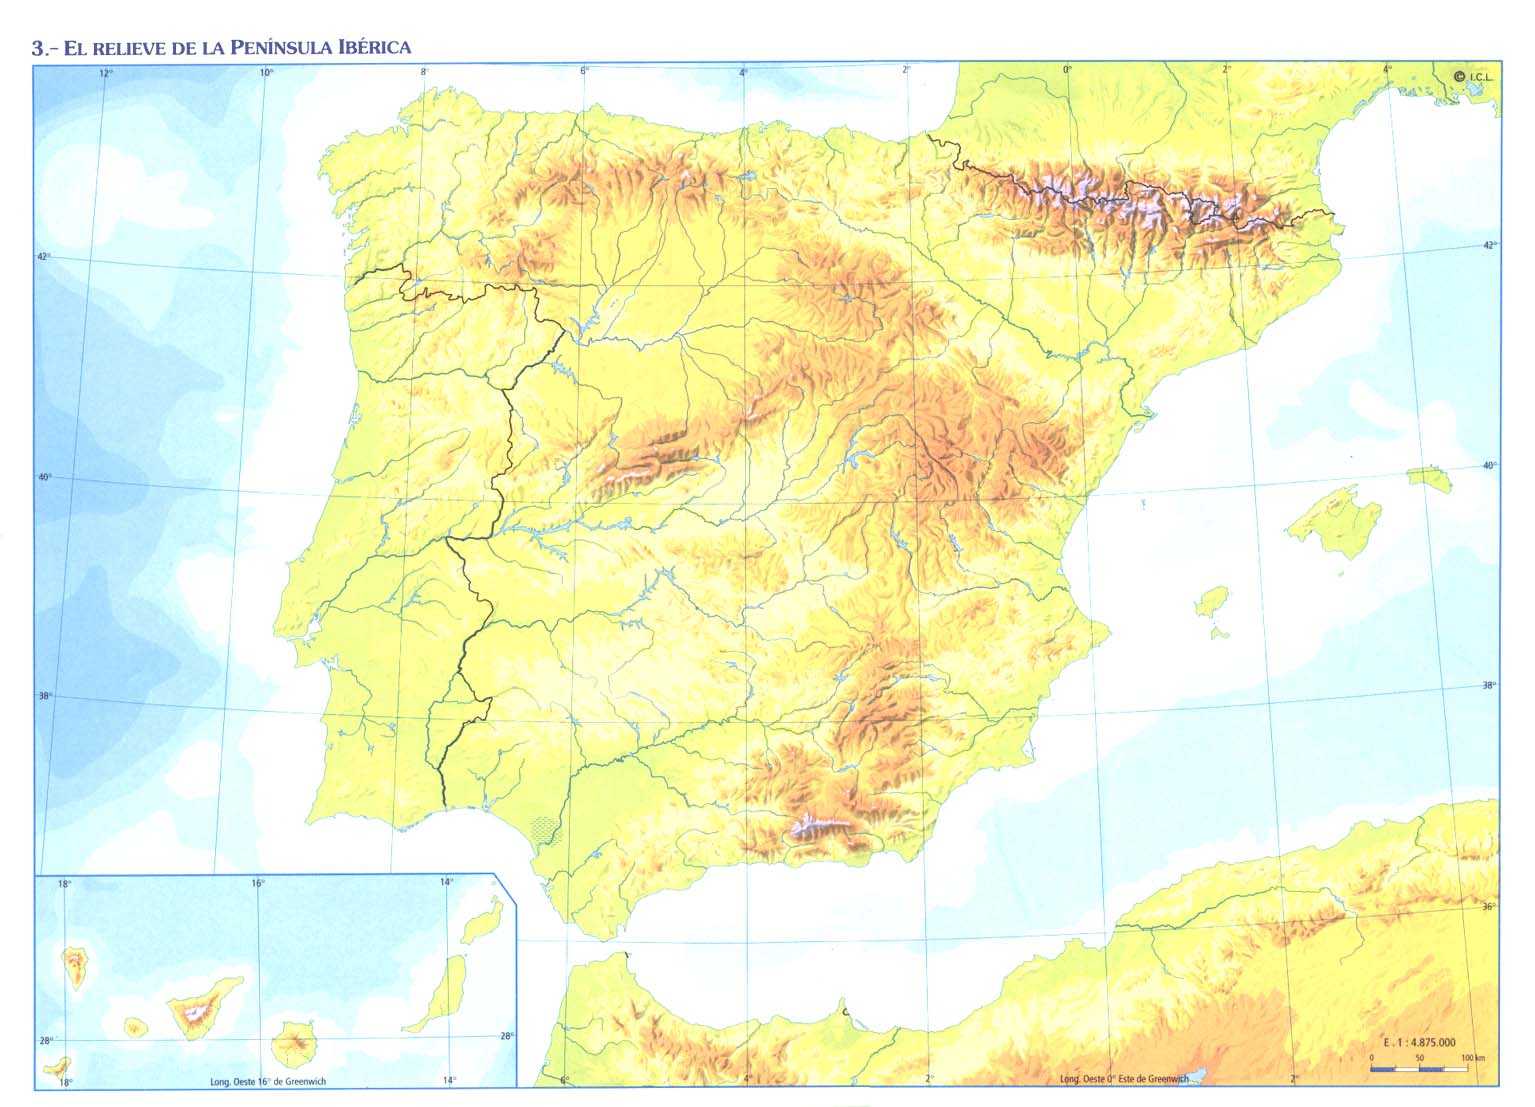 Juegos del mapa de España para Primaria